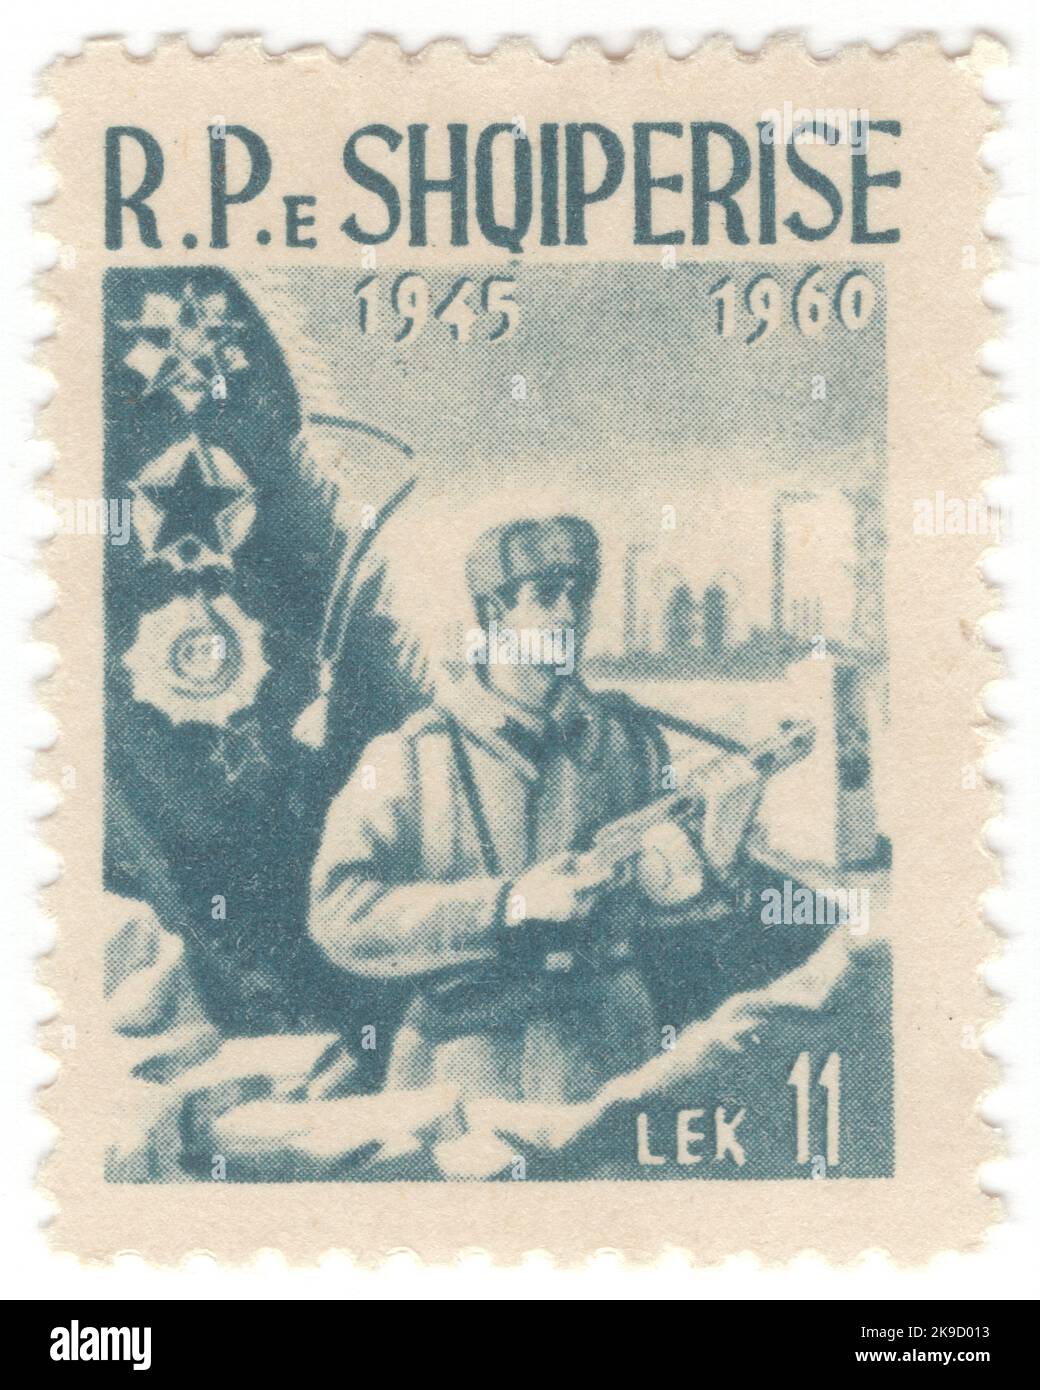 ALBANIA - 1960 aprile 22: Un francobollo del lago di lek del 11 che mostra il ritratto di Lenin. 90th° anniversario della nascita di Lenin Foto Stock